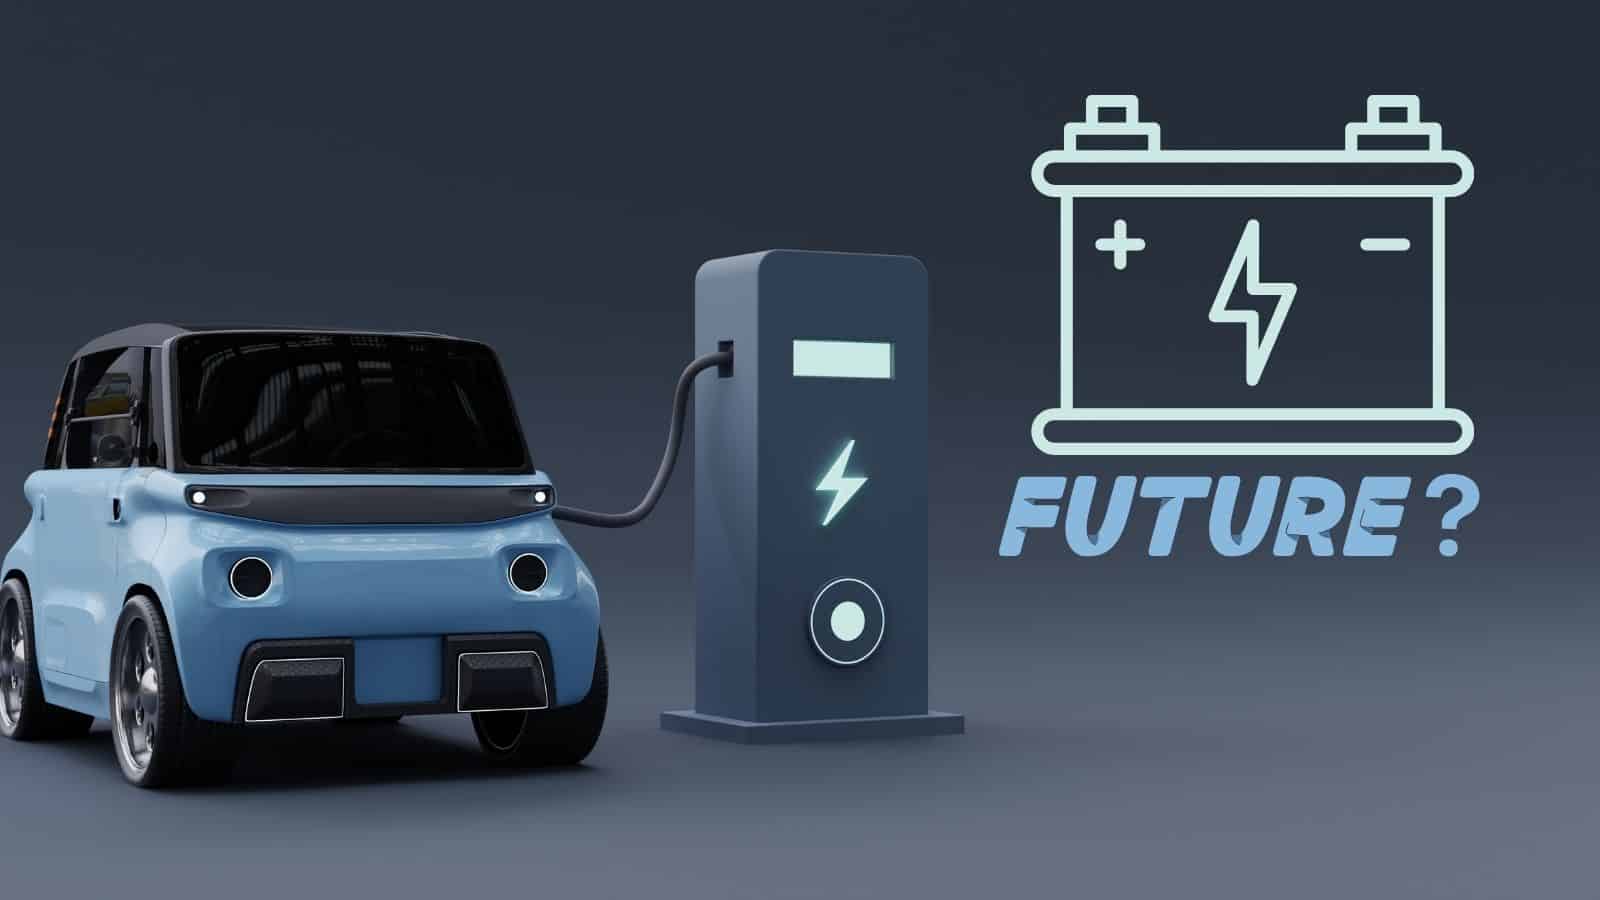 Batterie allo stato solido: saranno il futuro delle auto elettriche?